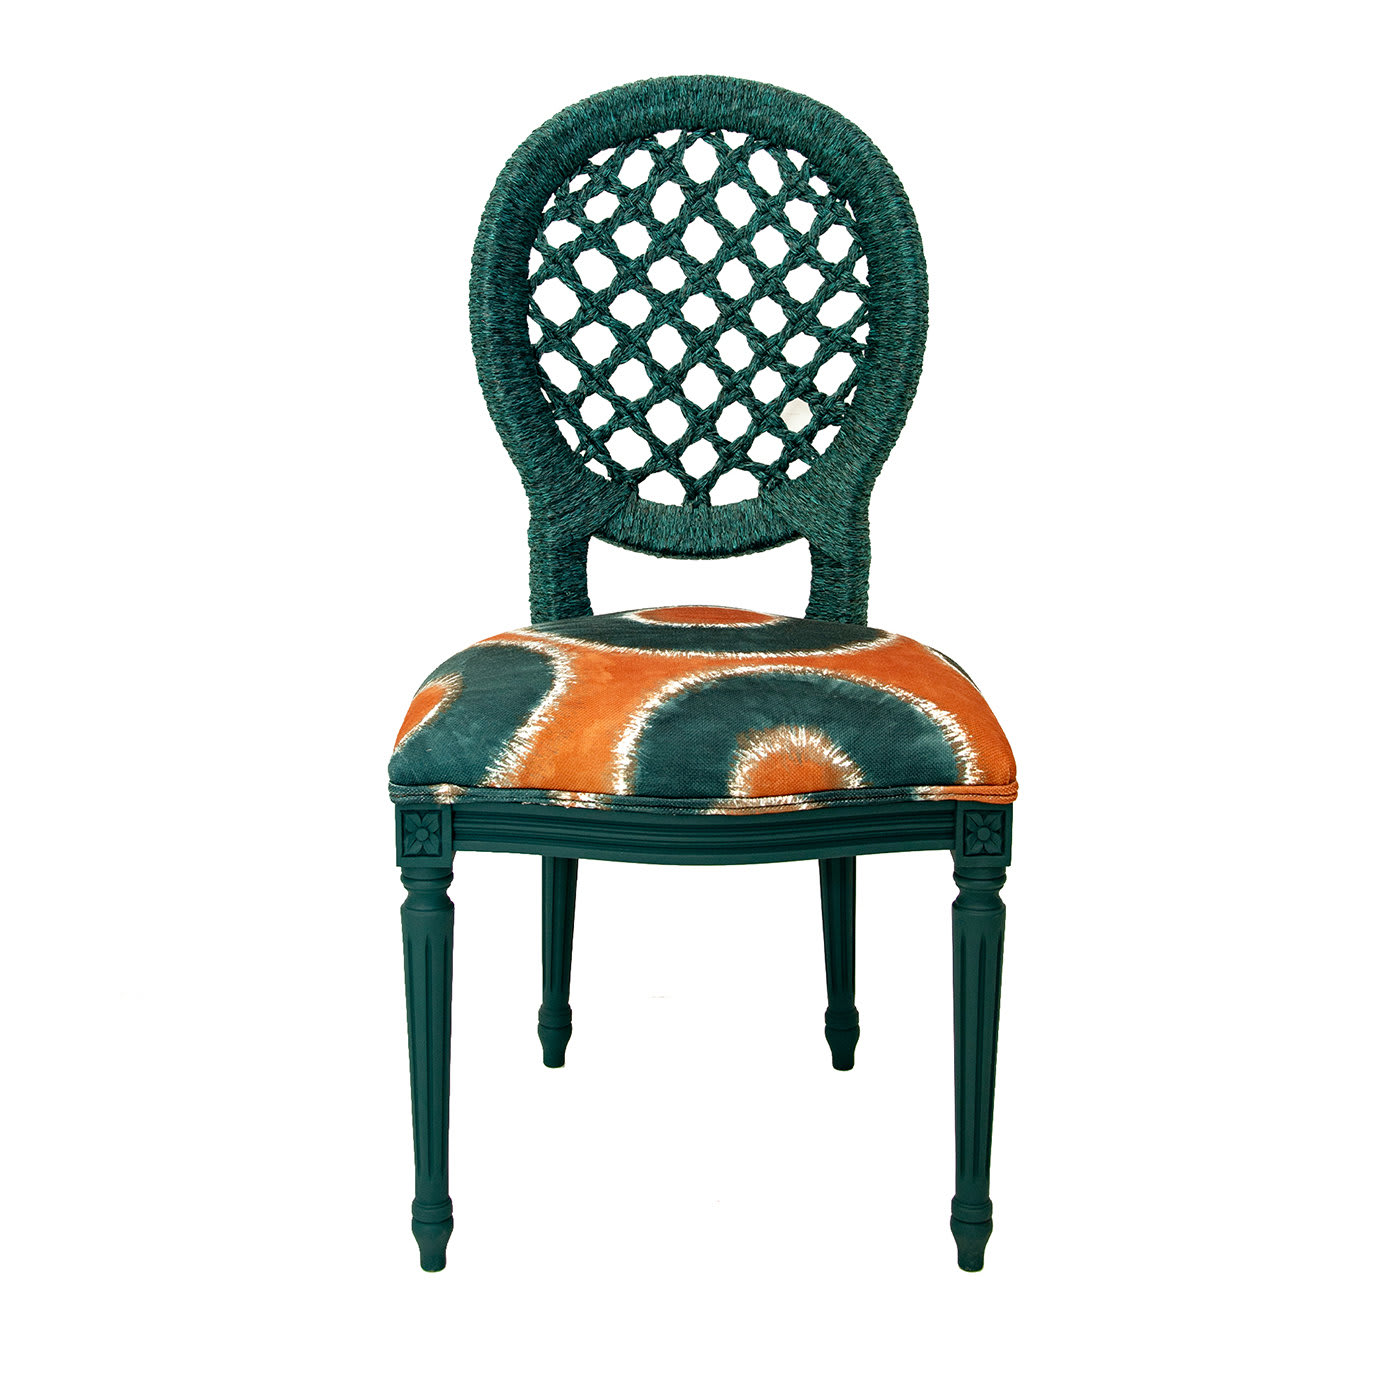 Amalfi Chair by Giannella Ventura - Via Rossini Milano